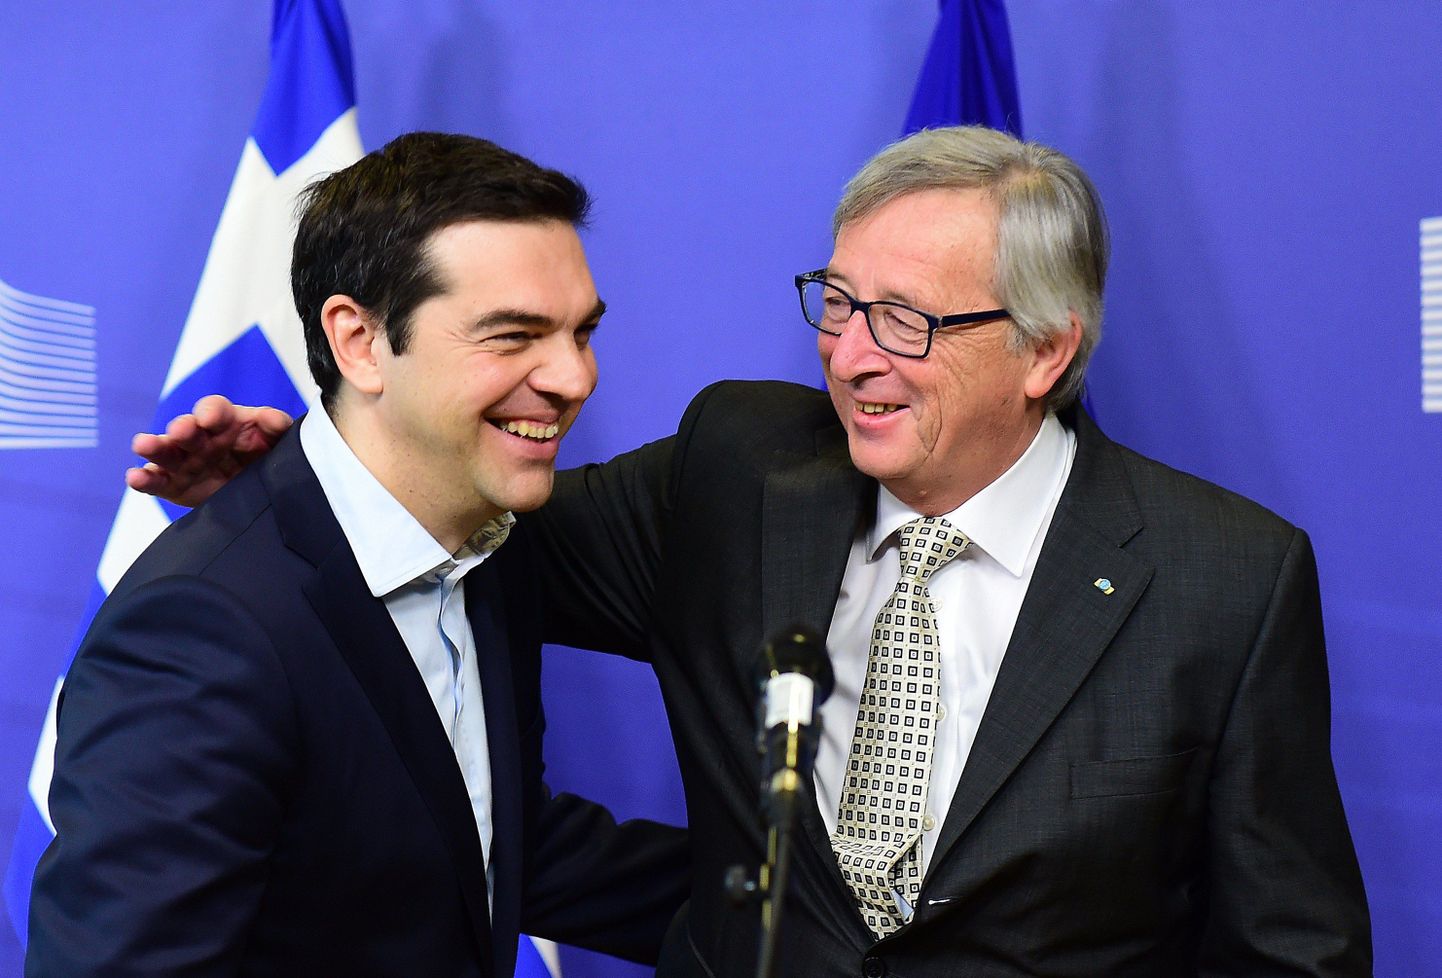 Kreeka peaminister Alexis Tsipras (vasakul) kohtumas Brüsselis Euroopa Komisjoni juhi Jean-Claude Junckeriga.